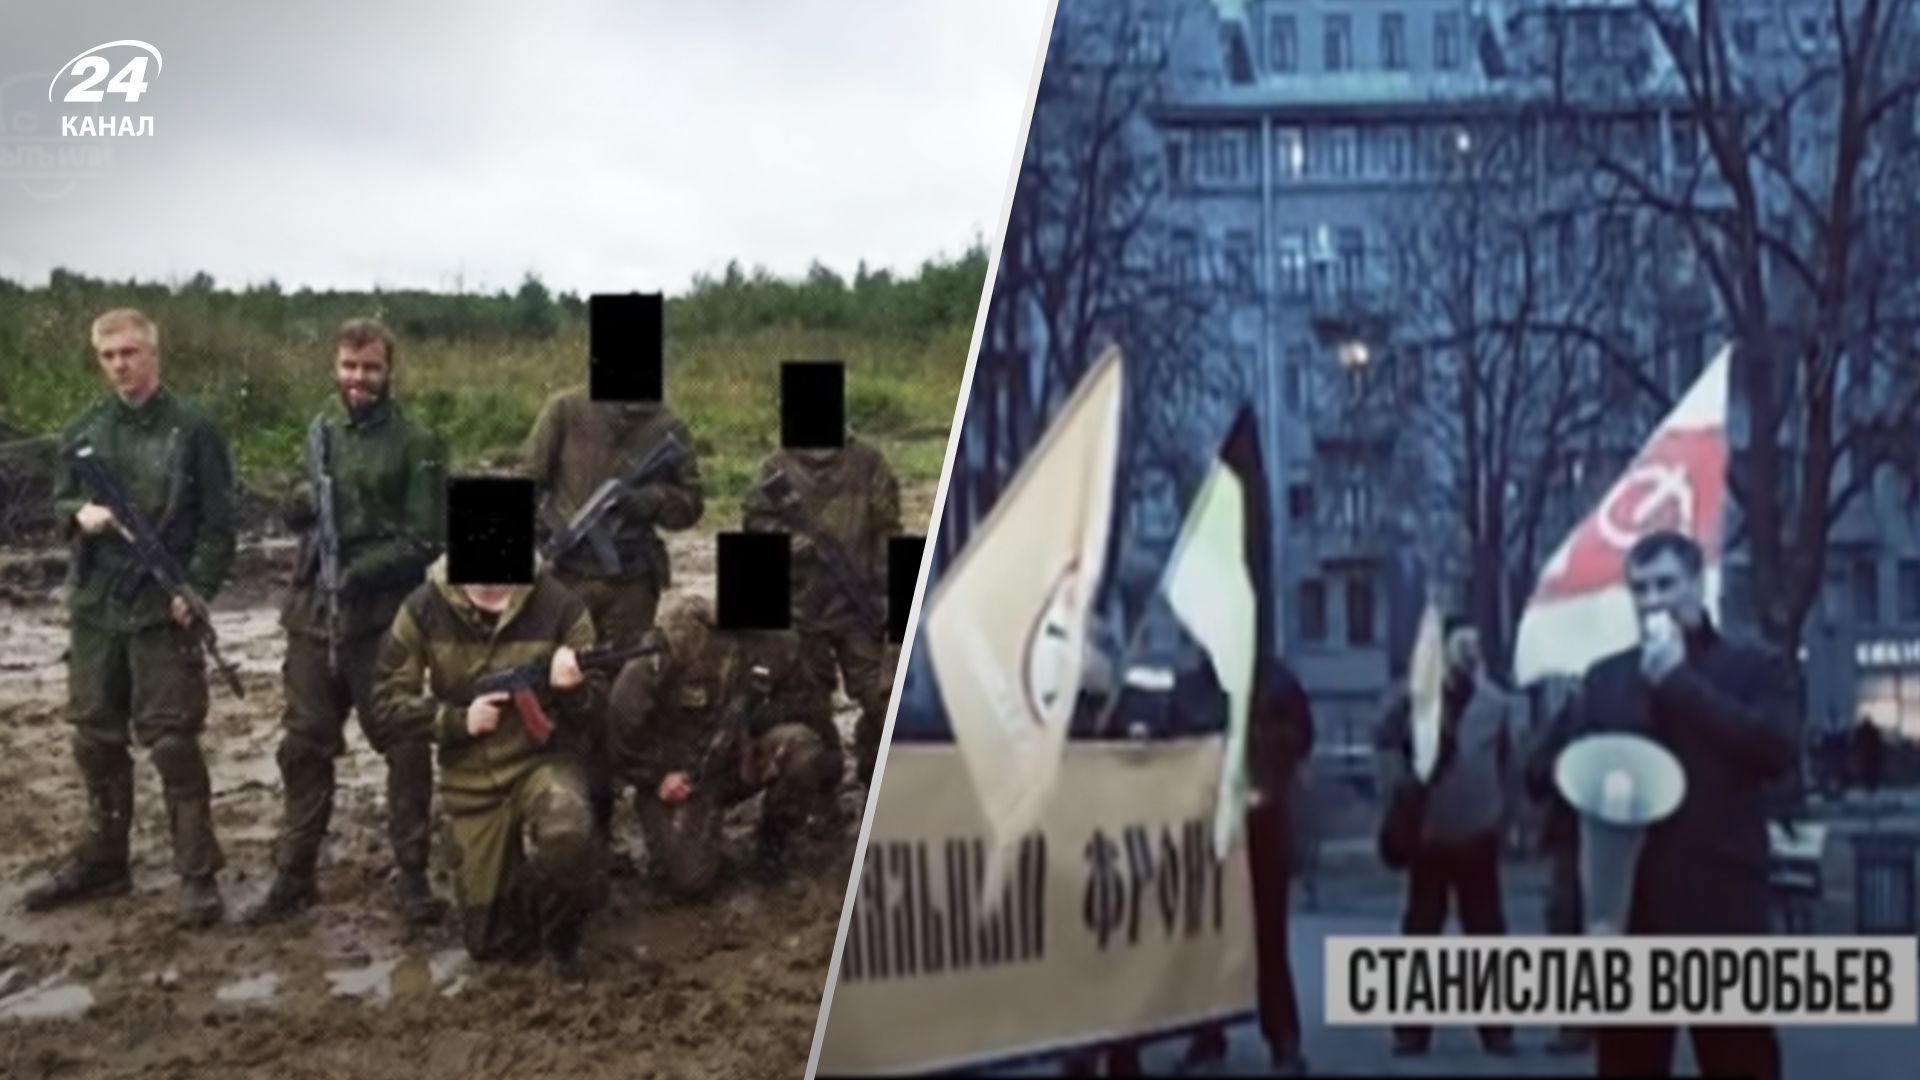 Война, террор и оккупация: Россия давно готовит боевиков для нападения на Европу - 24 Канал